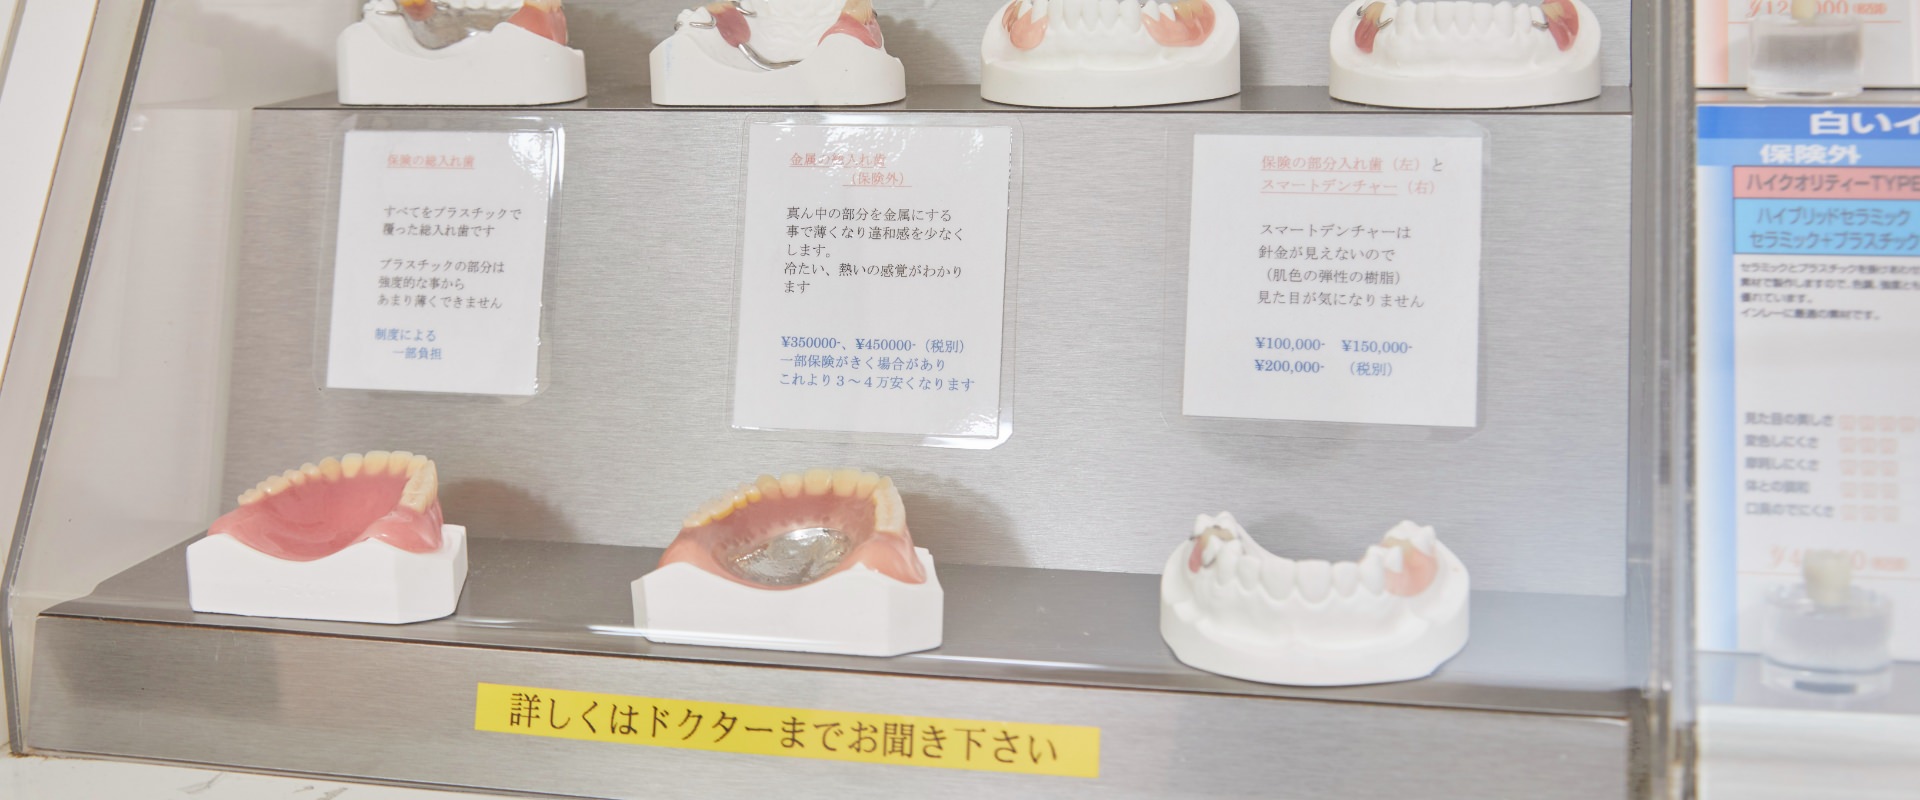 入れ歯の模型の写真